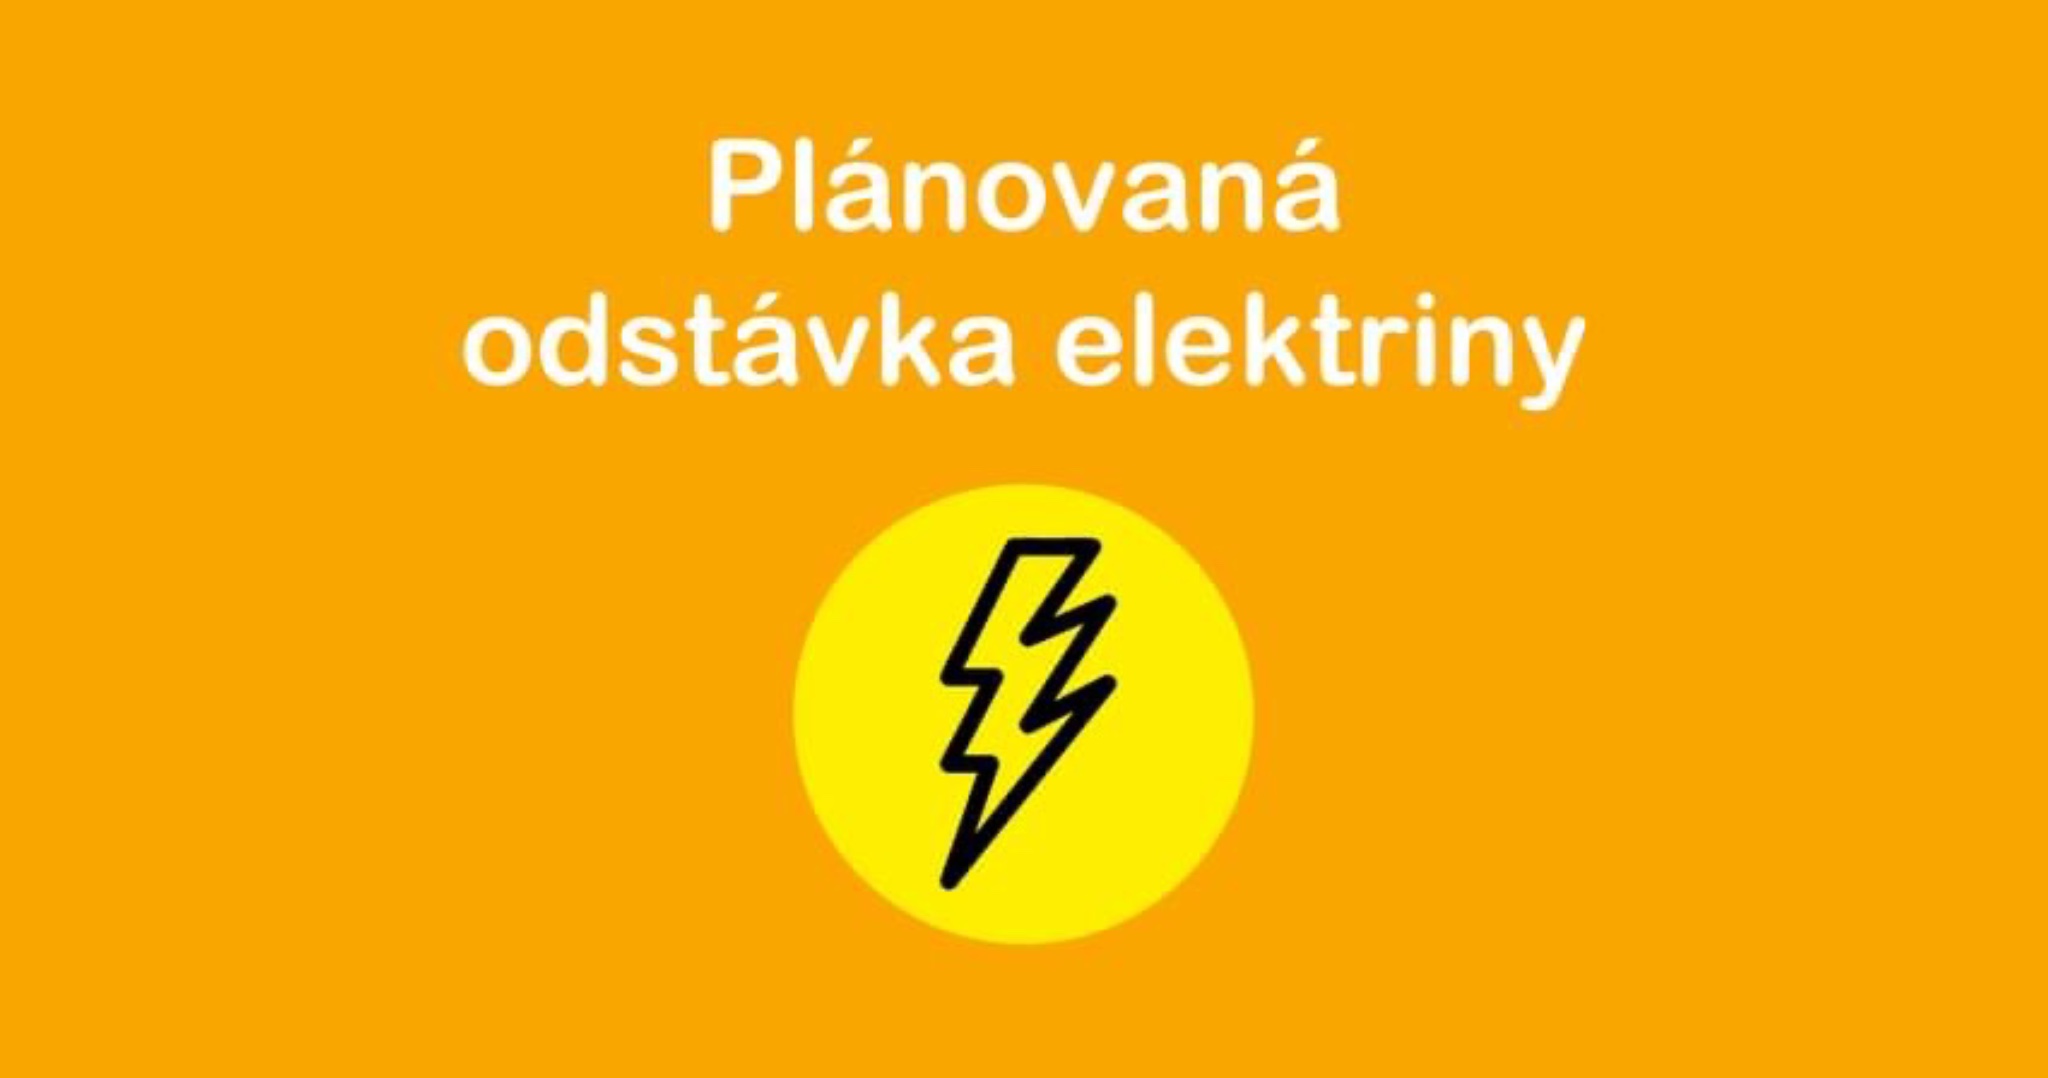 Západoslovenská distribučná spoločnosť upozorňuje na plánovanú odstávku elektrickej energie